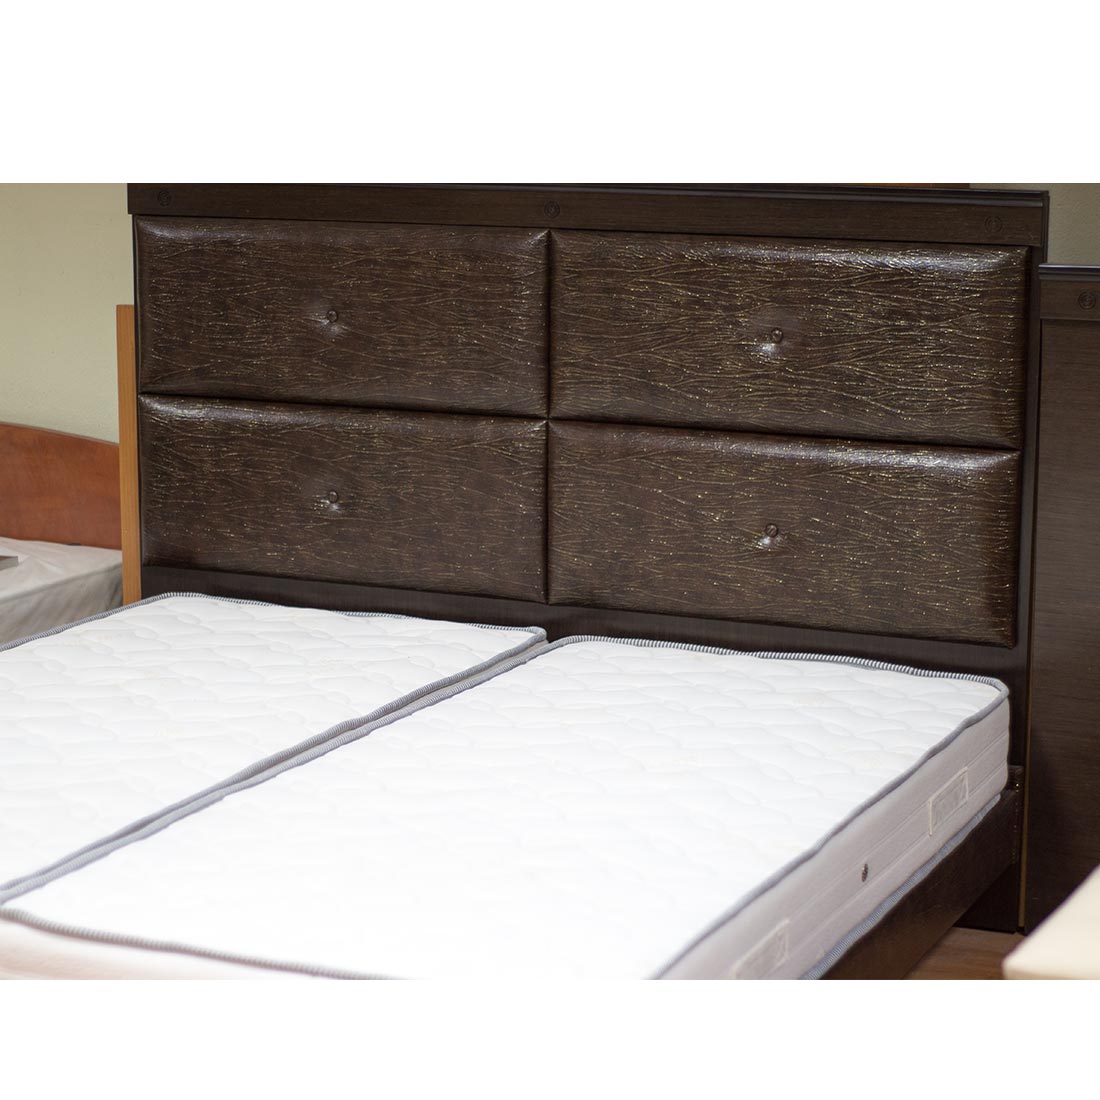 Κρεβάτι διπλό με ταμπλά 180x2x133 με στρώματα σε απόχρωση καρυδί